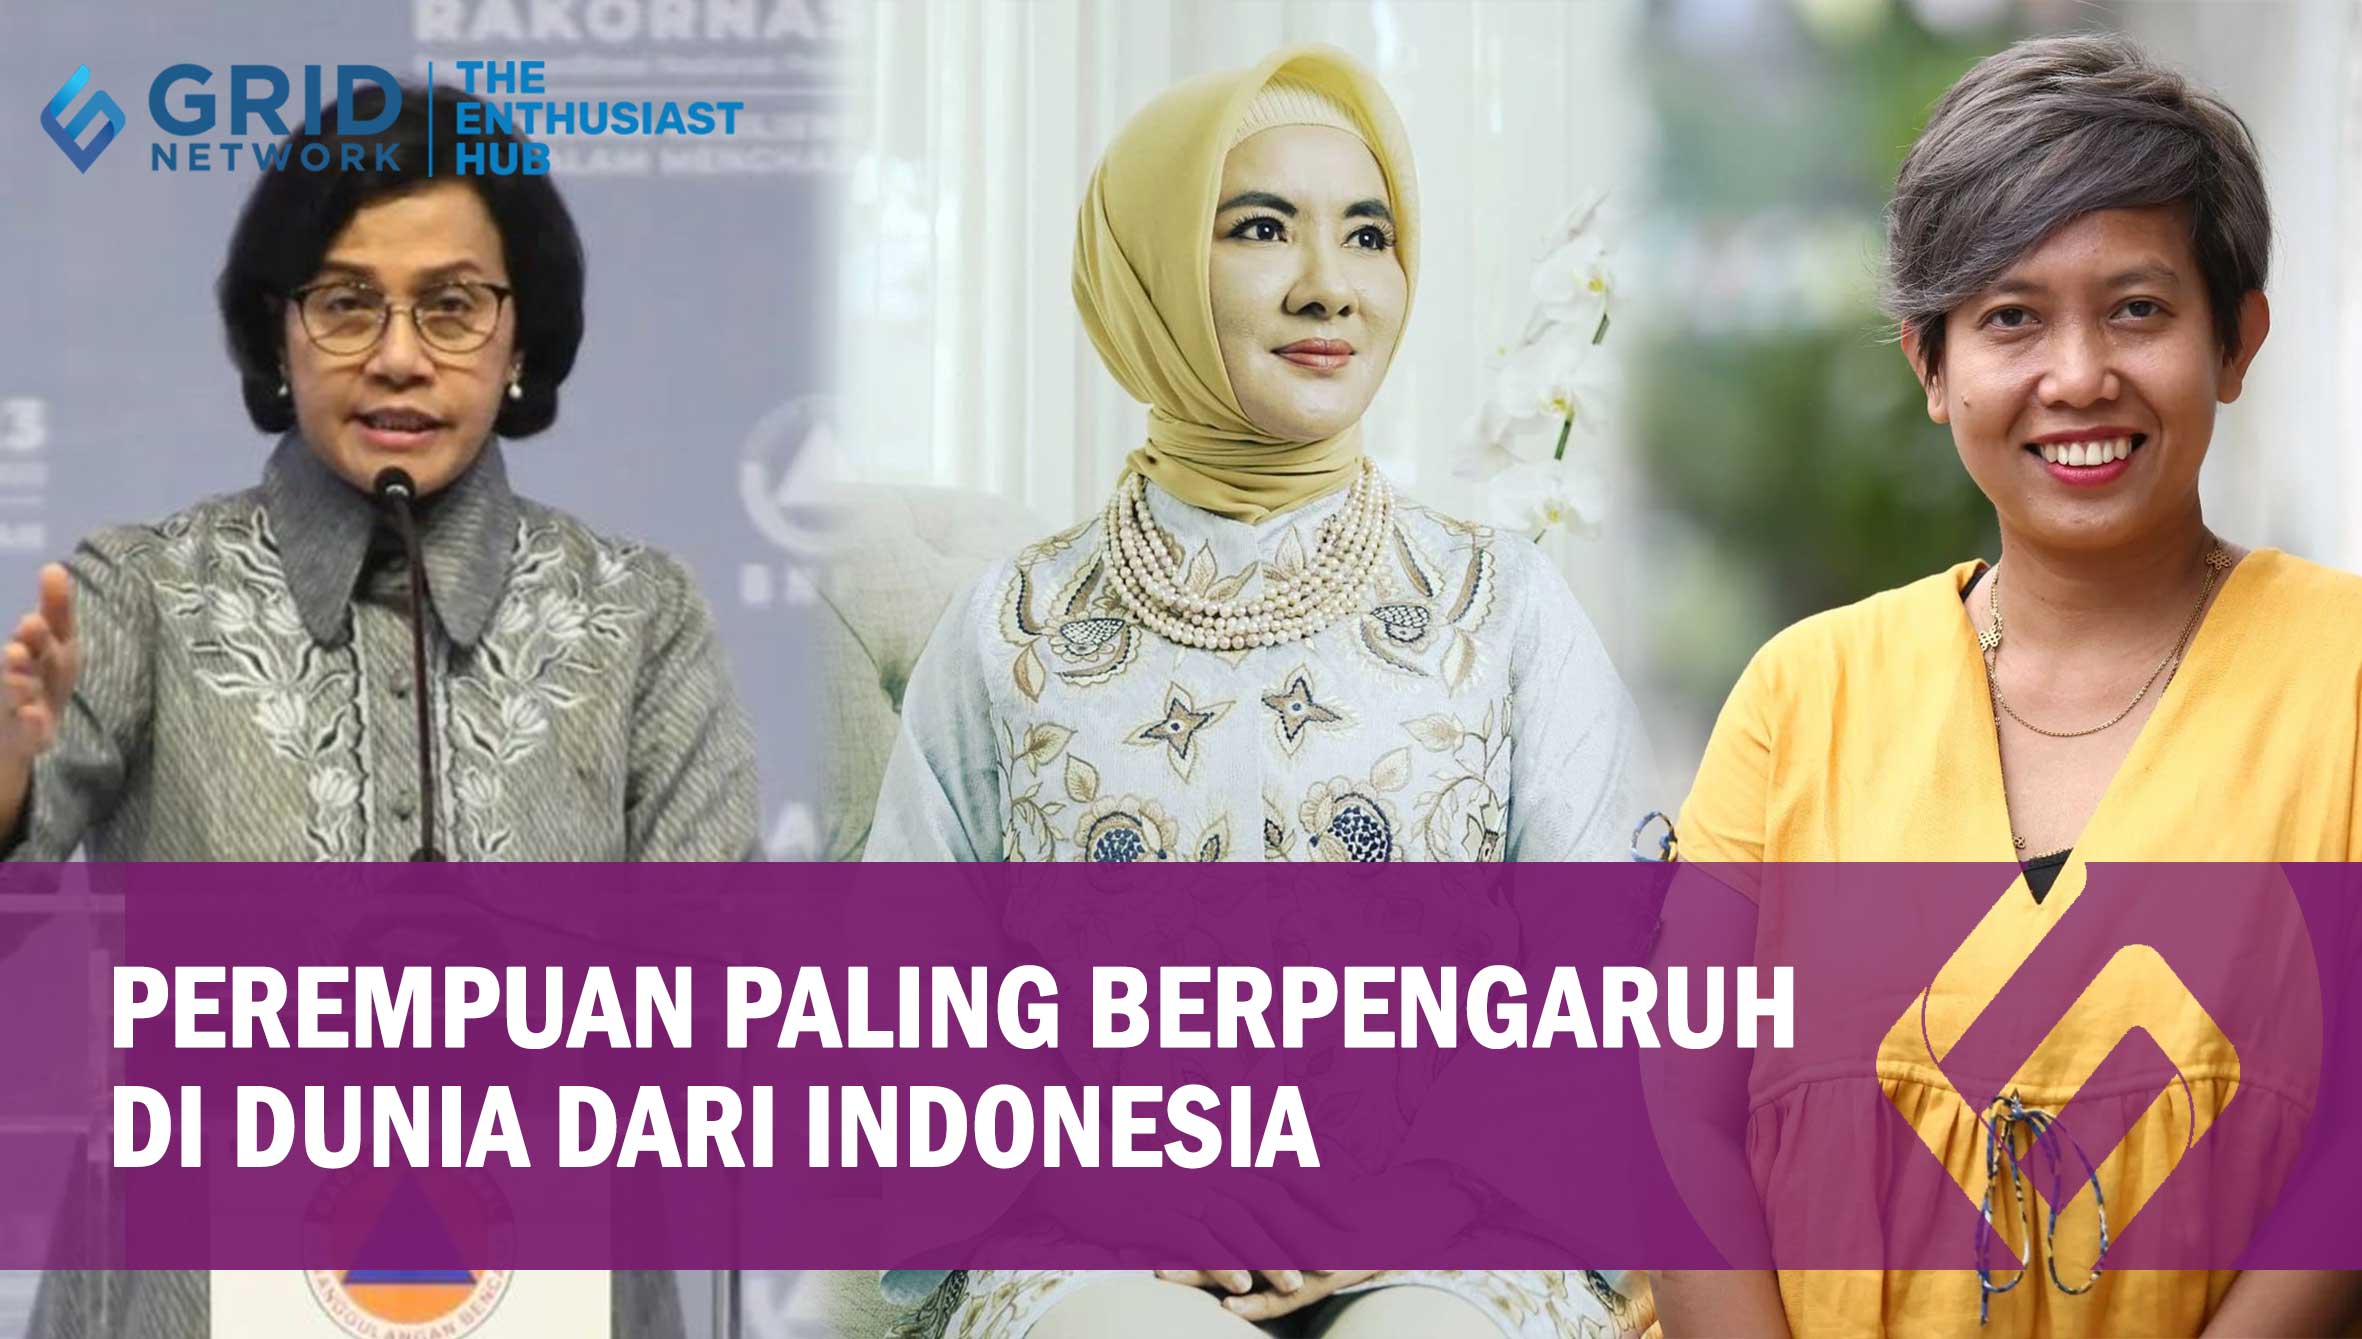 Ini 3 Perempuan Paling Berpengaruh di Dunia dari Indonesia.